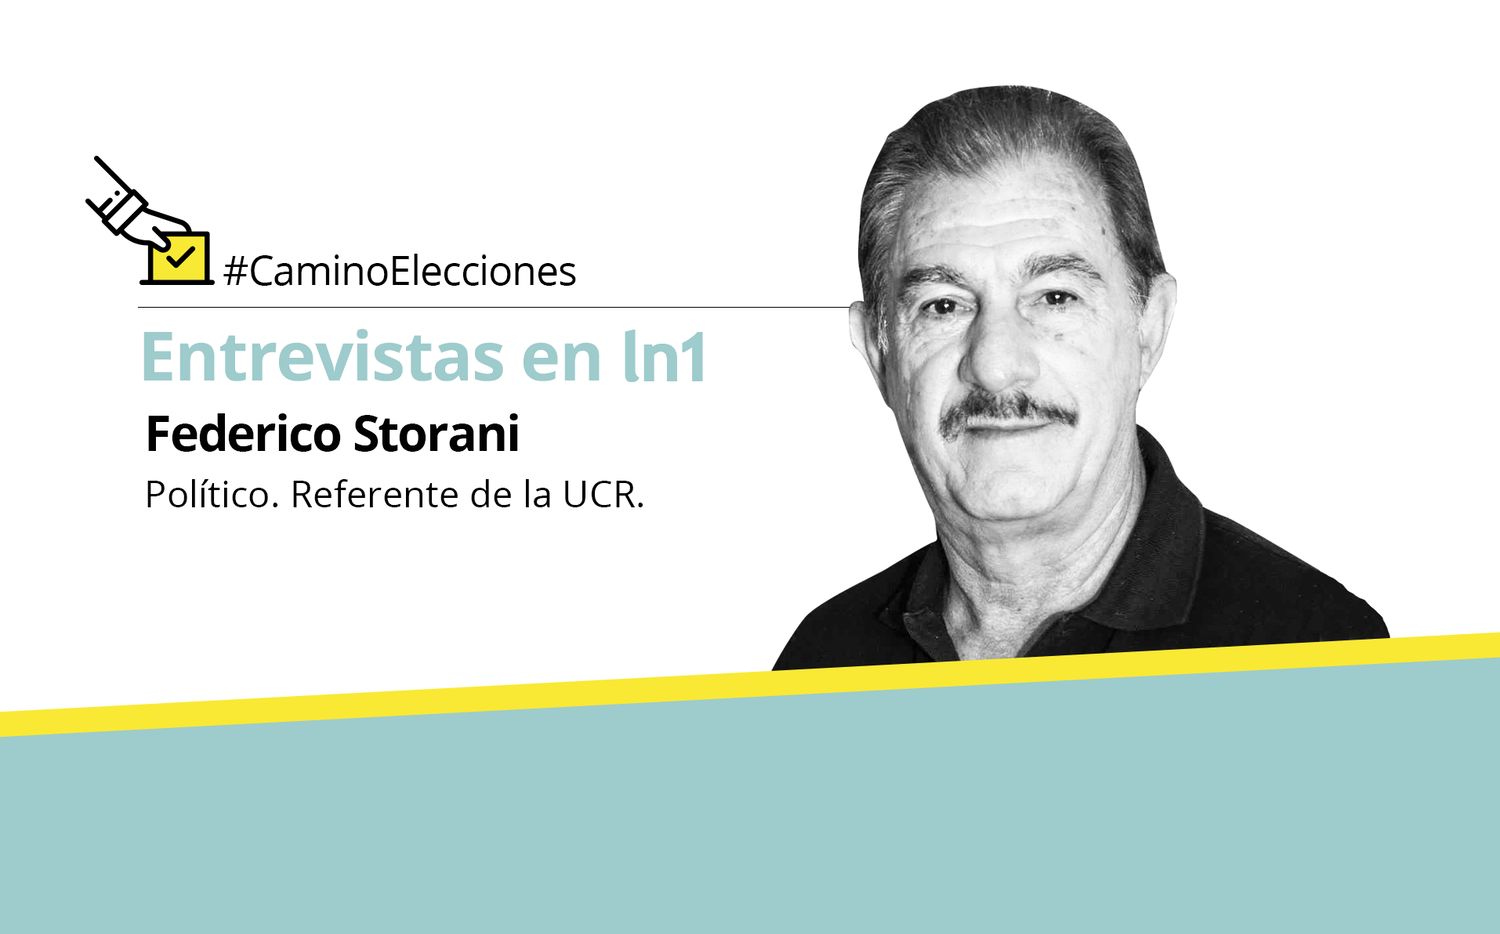 Federico Storani: "Polarizar con Cristina es pan para hoy y hambre para mañana"